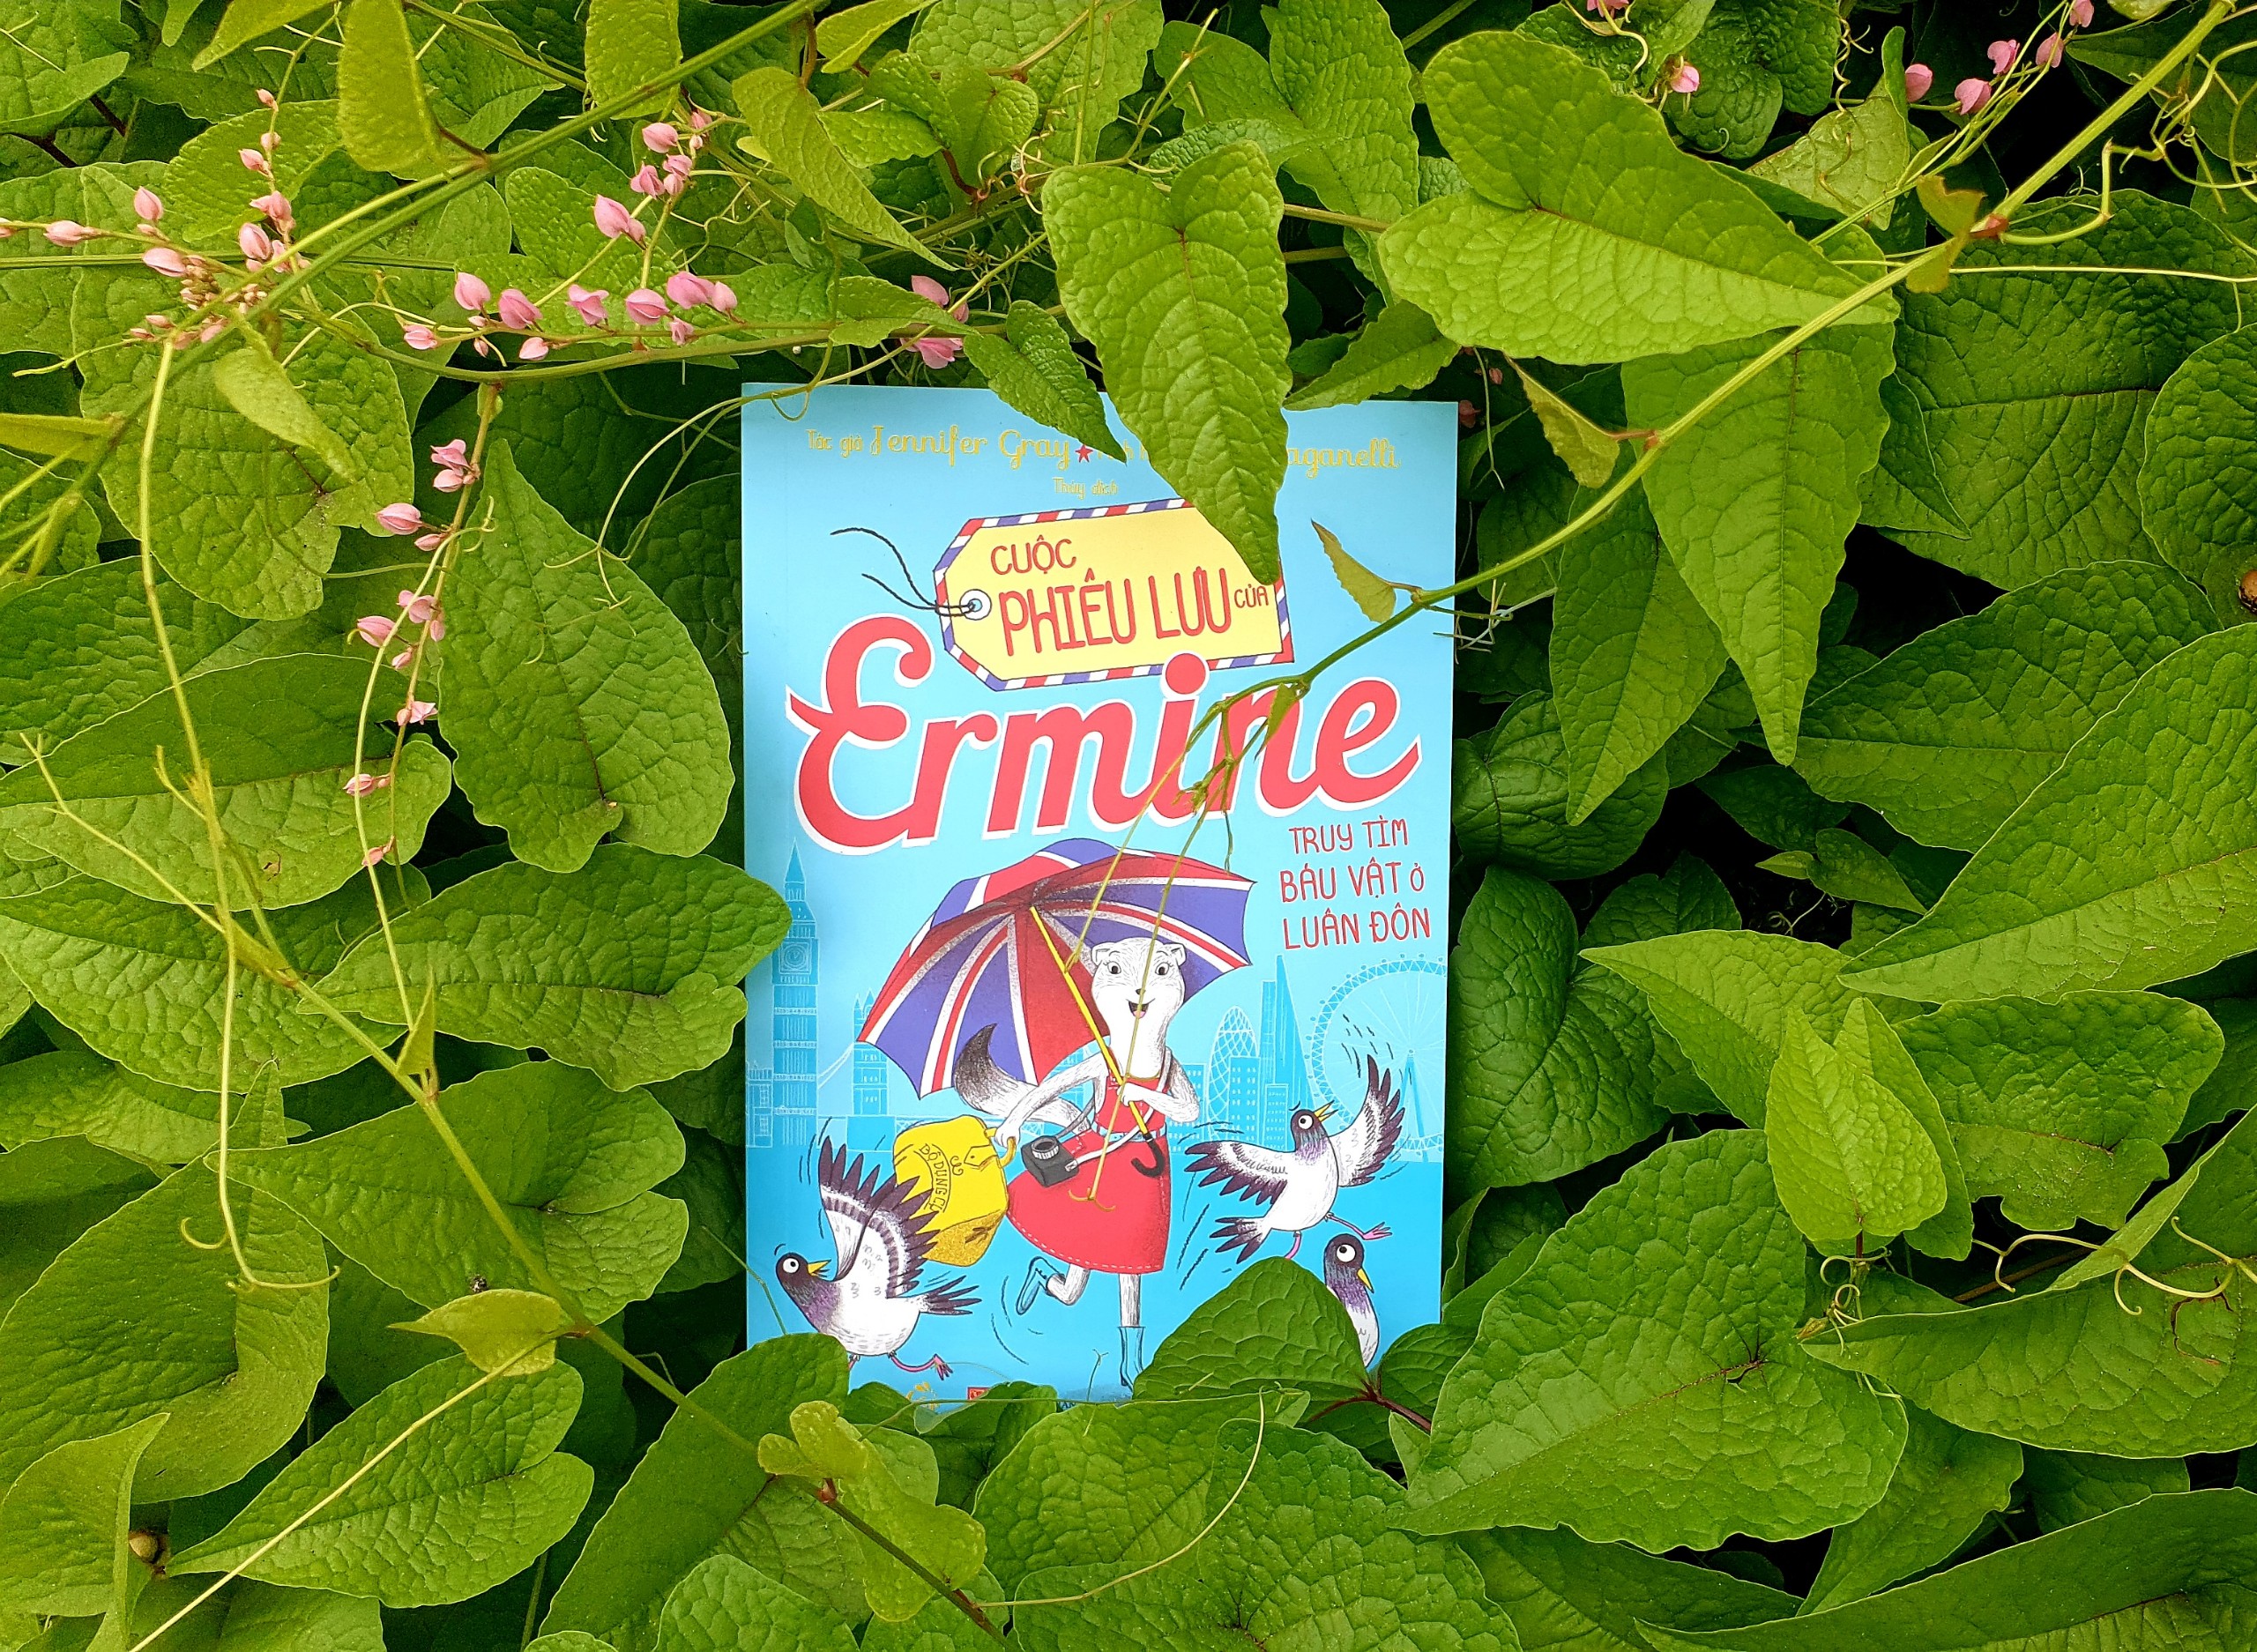 Sách Cuộc Phiêu lưu của Ermine – Truy tìm báu vật ở Luân Đôn